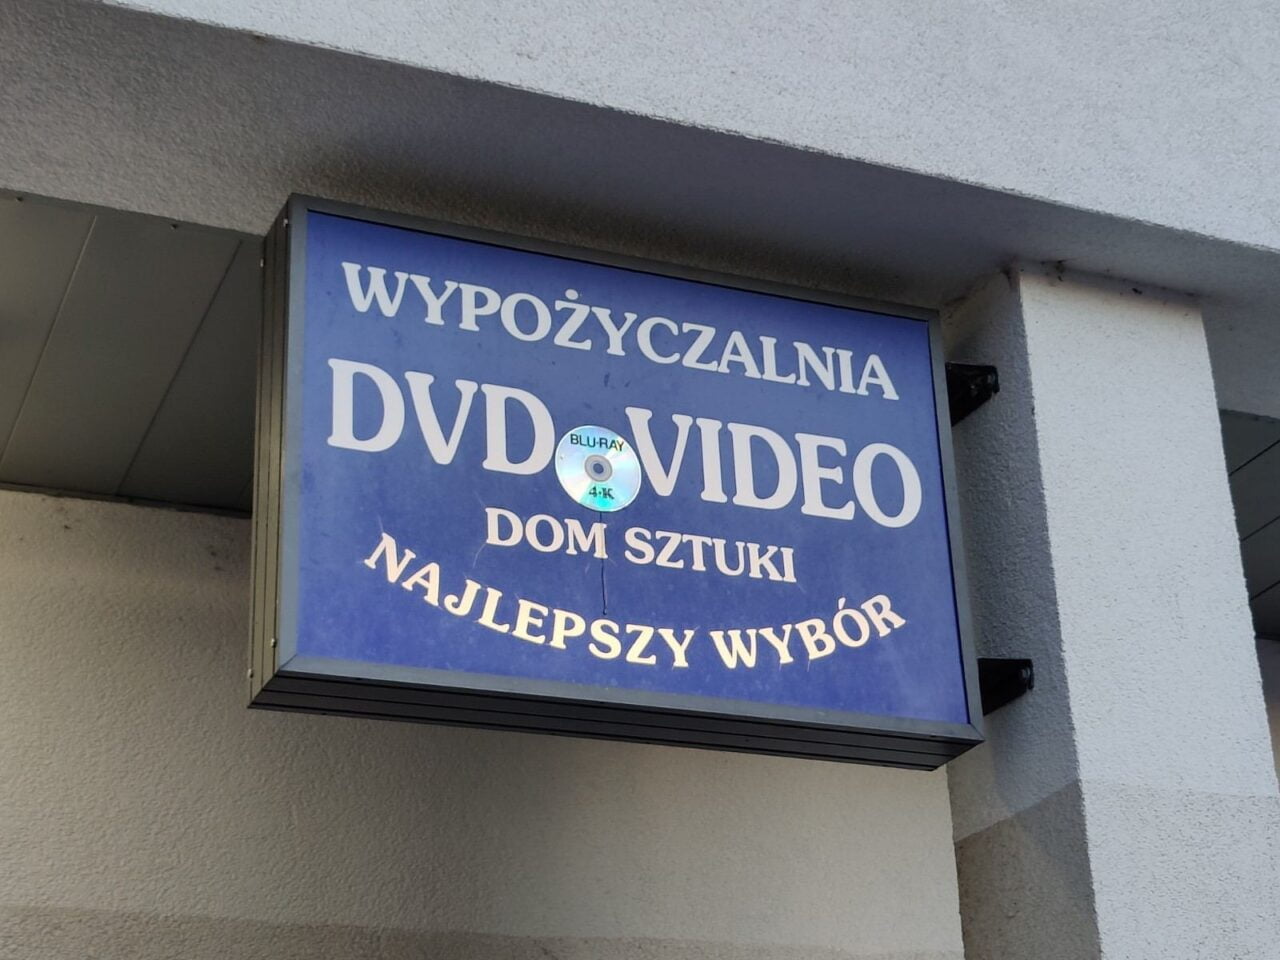 Wypożyczalnia DVD zdjęcie szyldu w Warszawie